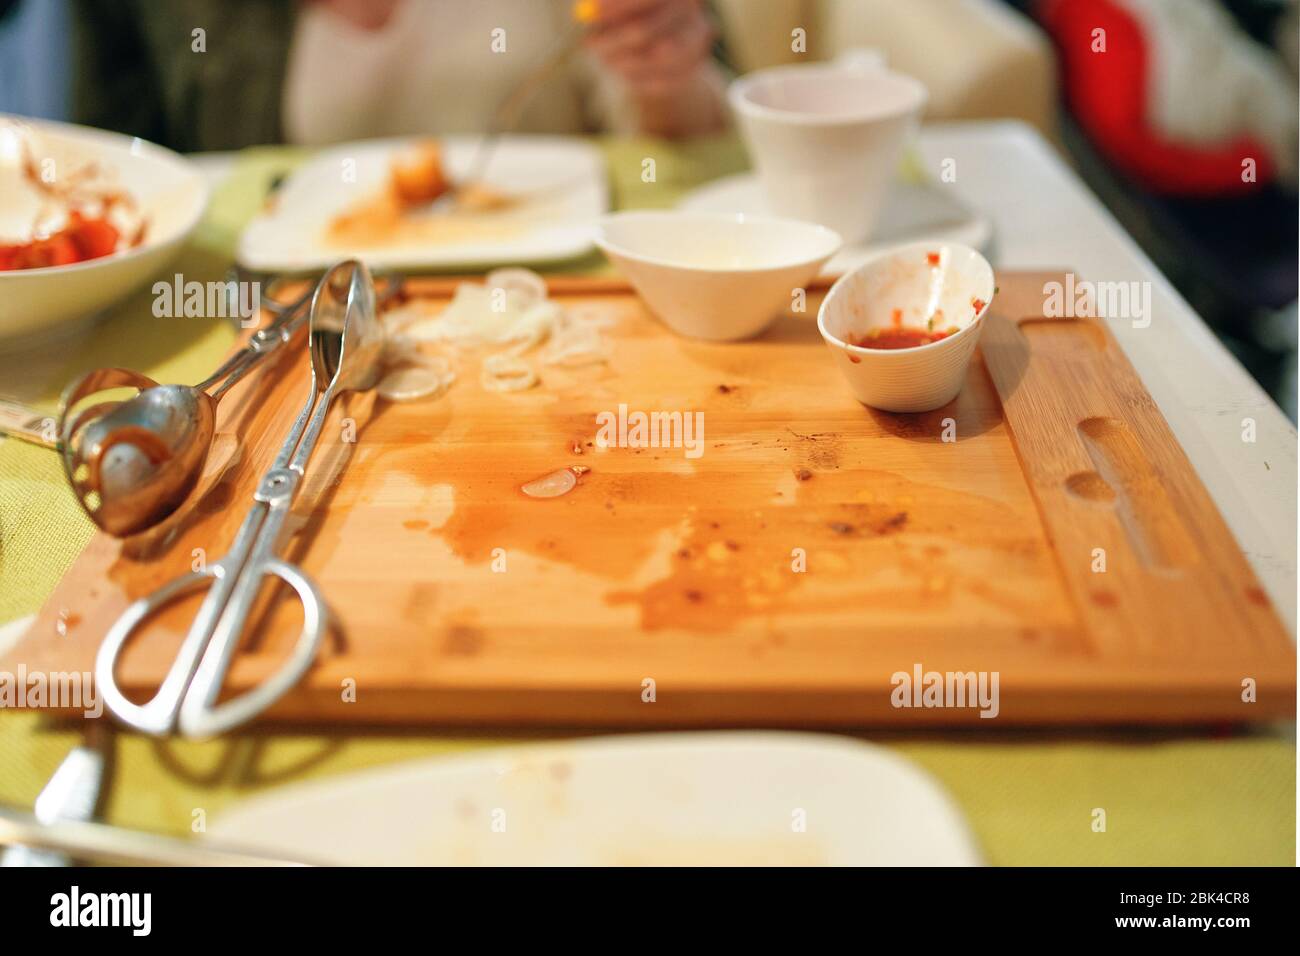 Dreckige Holzverkleidung nach dem Frühstück. Leerer und dreckiger Teller  mit einer Gabel und Essensstückchen nach dem Mittagessen auf dem Tisch  Stockfotografie - Alamy